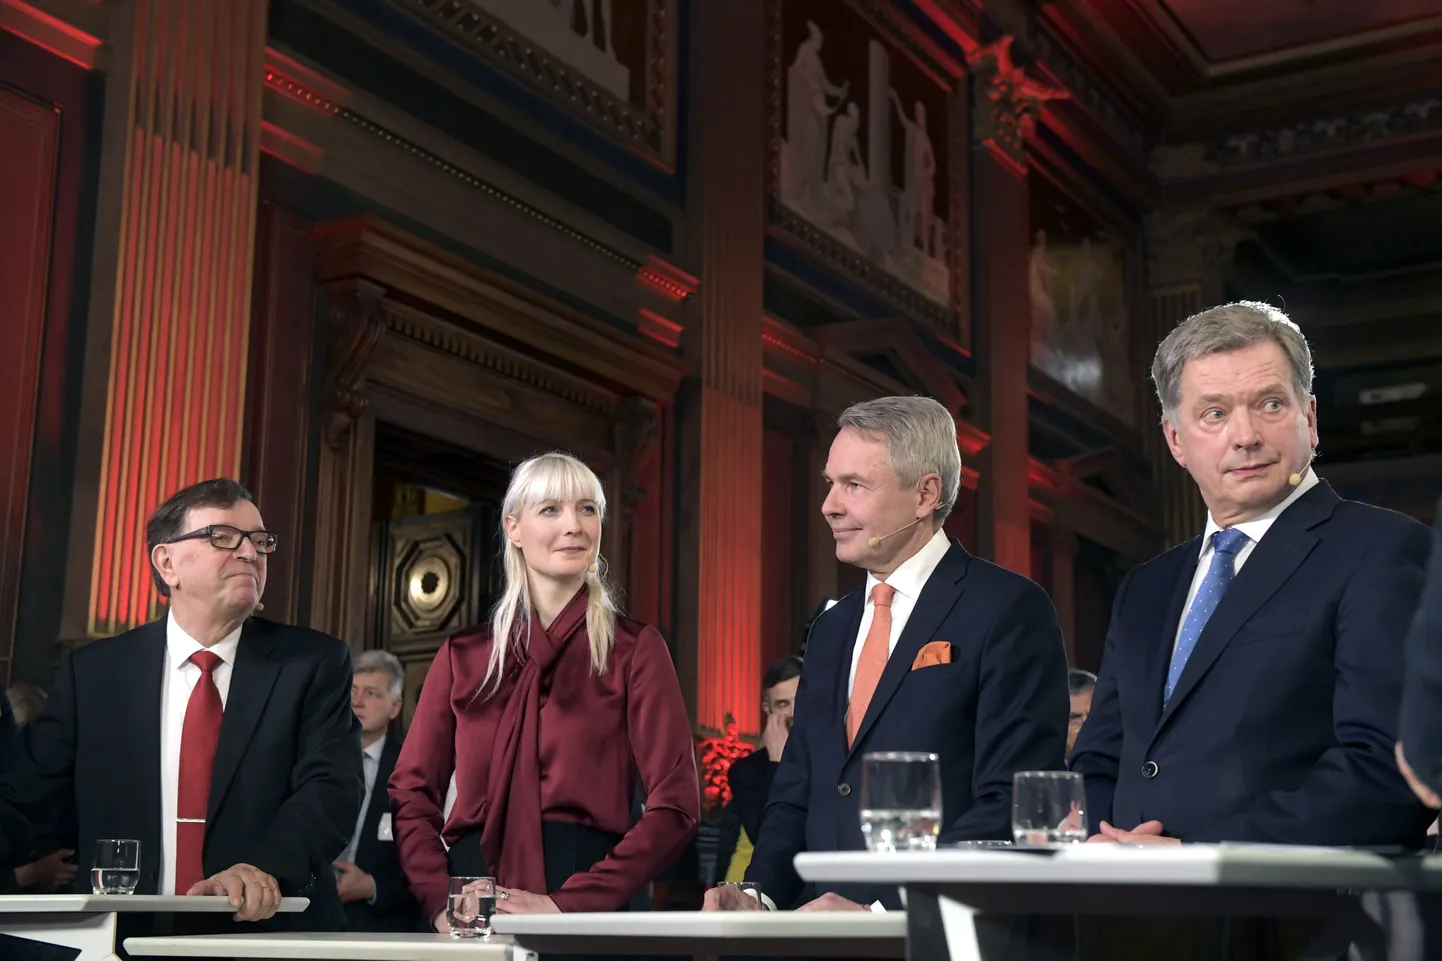 Soome presidendikandidaadid valimiste ööl Helsingis. Laura Huhtasaari on vasakult teine.